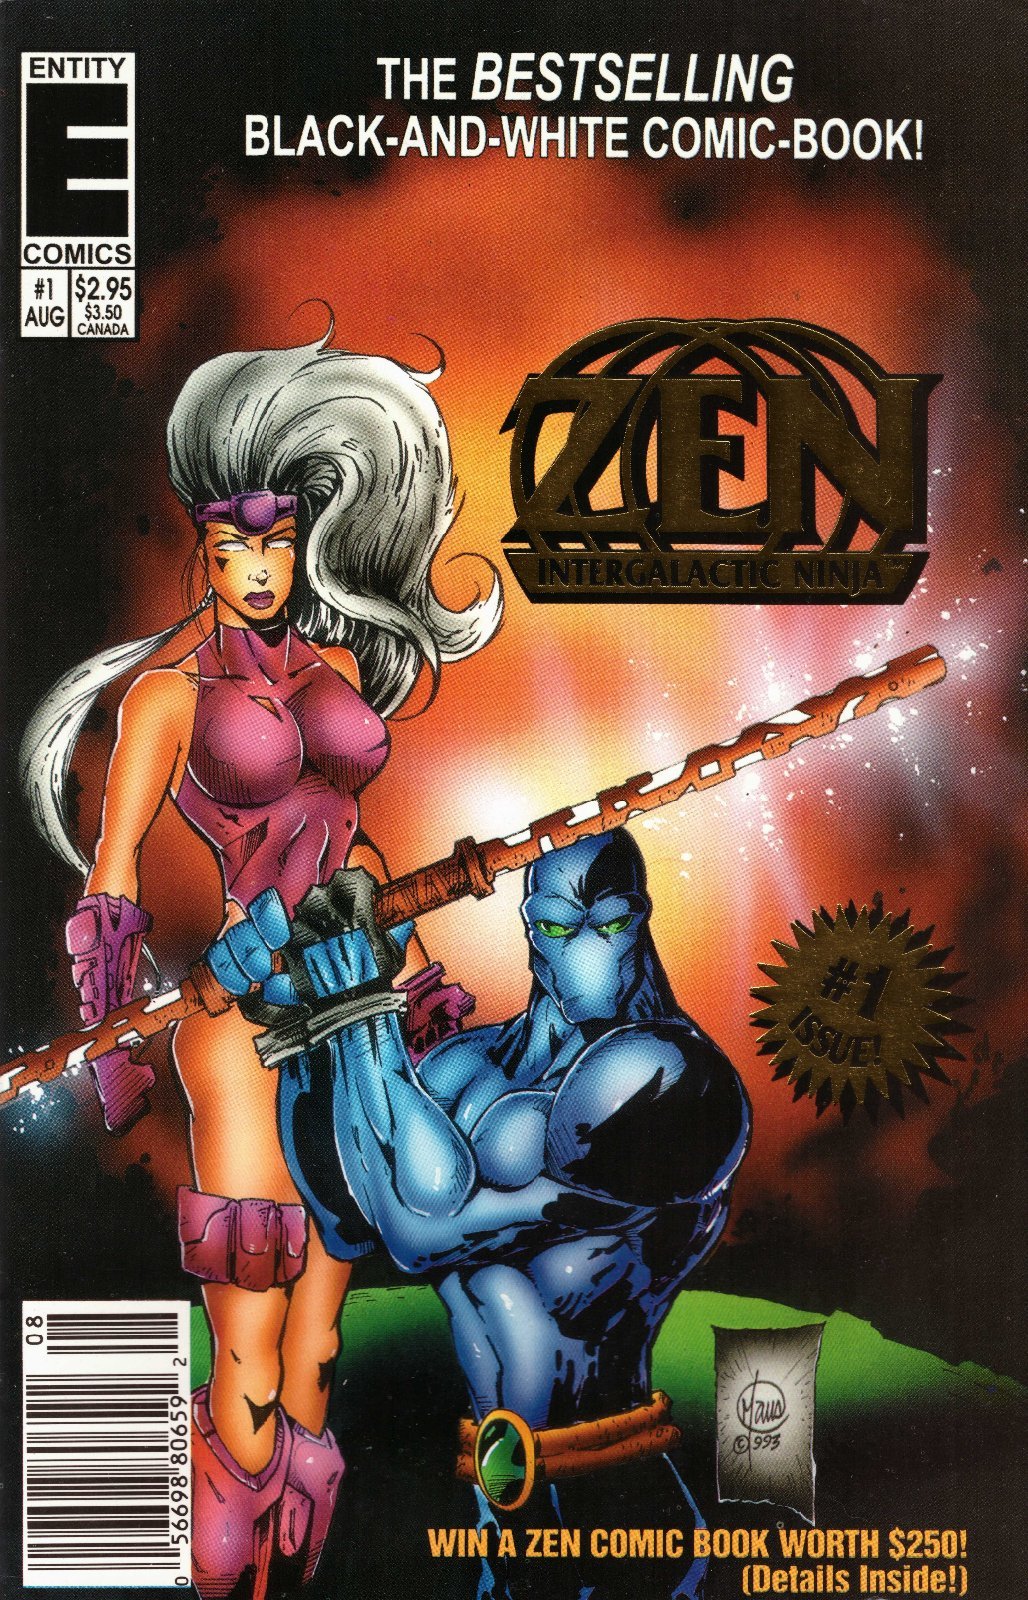 Zen Intergalactic Ninja #1 Newsstand Cover (1993) Entity